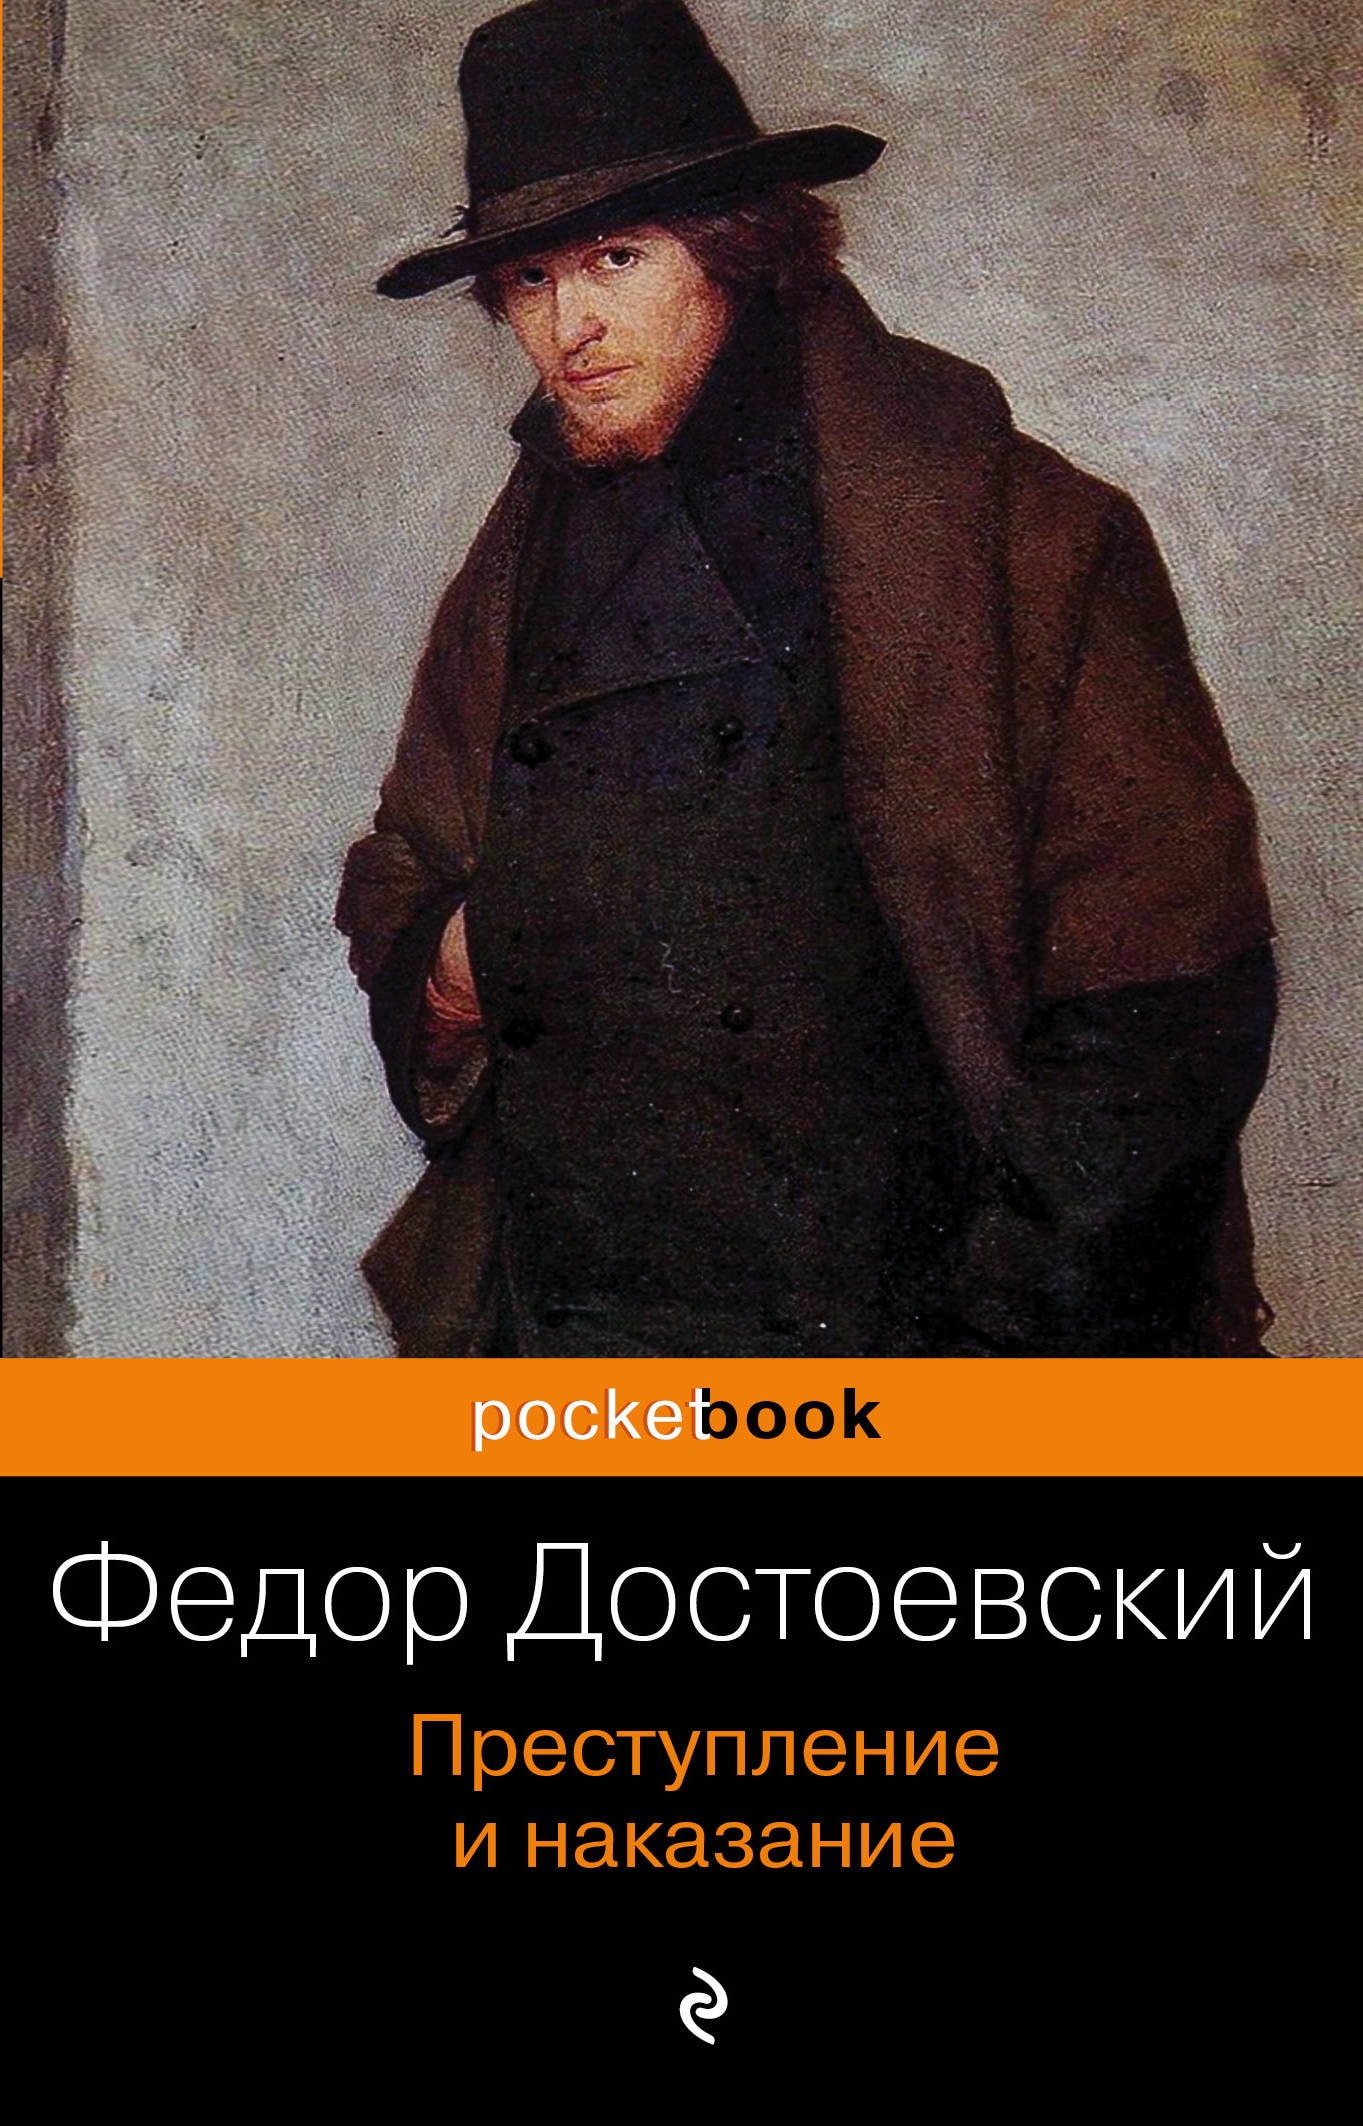 Книга «Преступление и наказание» Федор Достоевский — 11 сентября 2020 г.